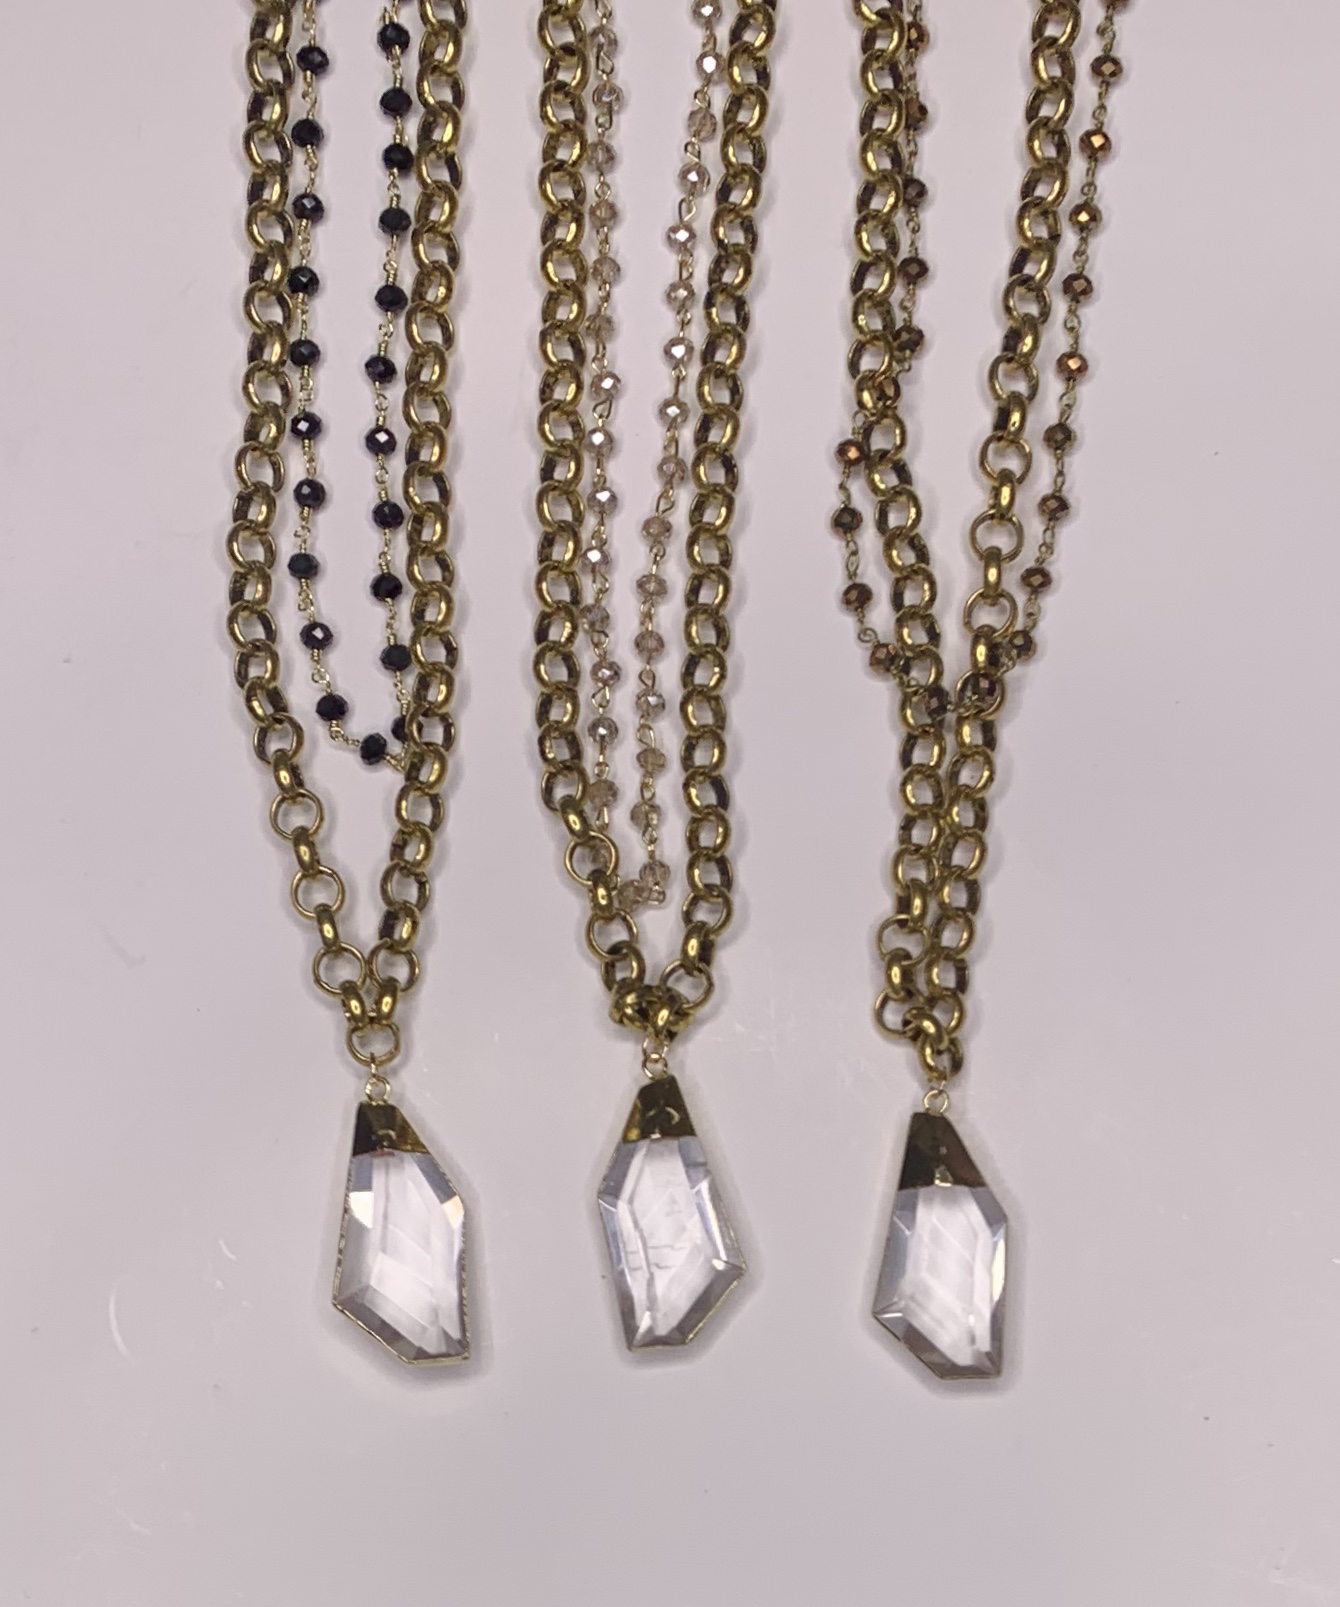 Halskette mit großem Anhänger Schmuckmetall Stein & Perlenbesatz Barock Stil